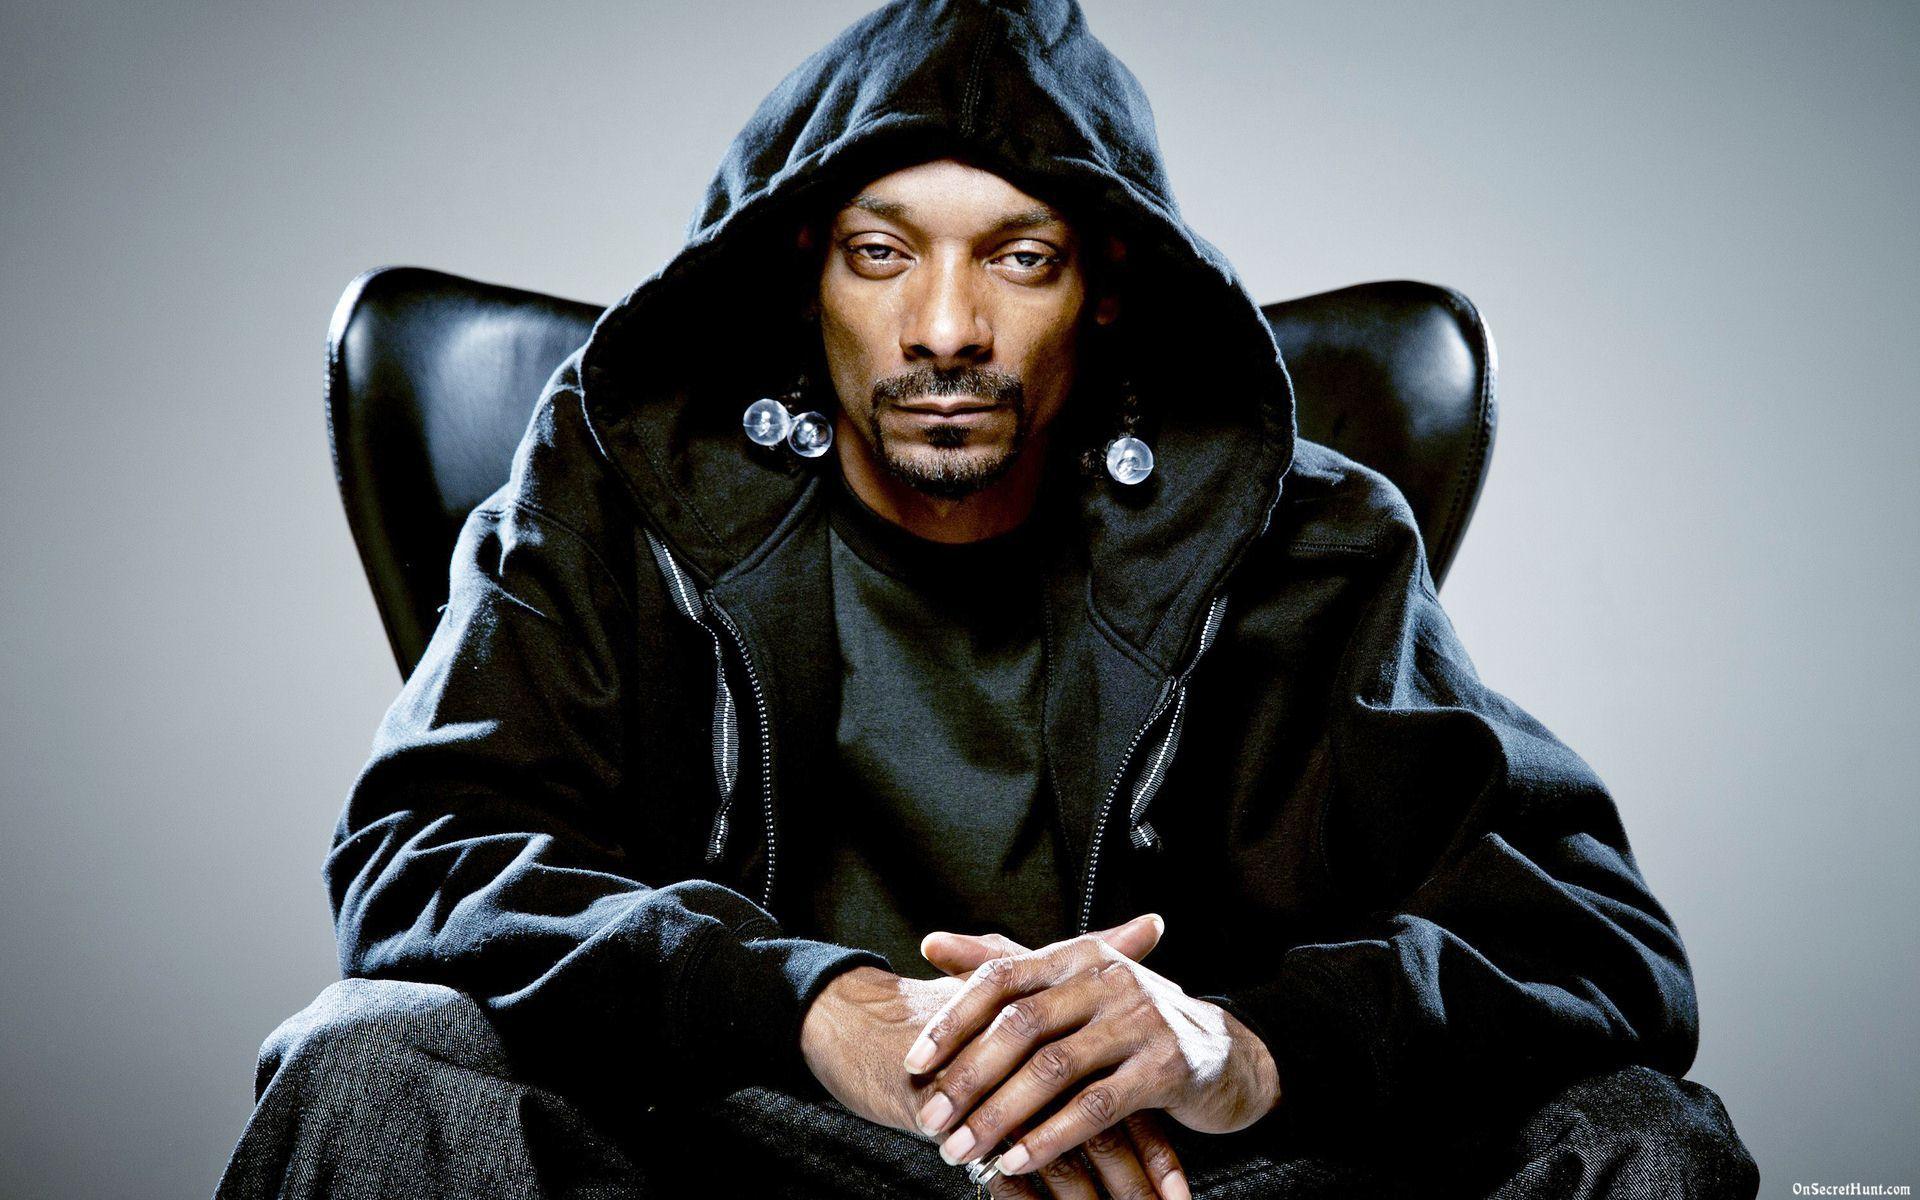 Snoop Dogg, Wiz Khalifa comes to Syracuse. The Fuze Magazine